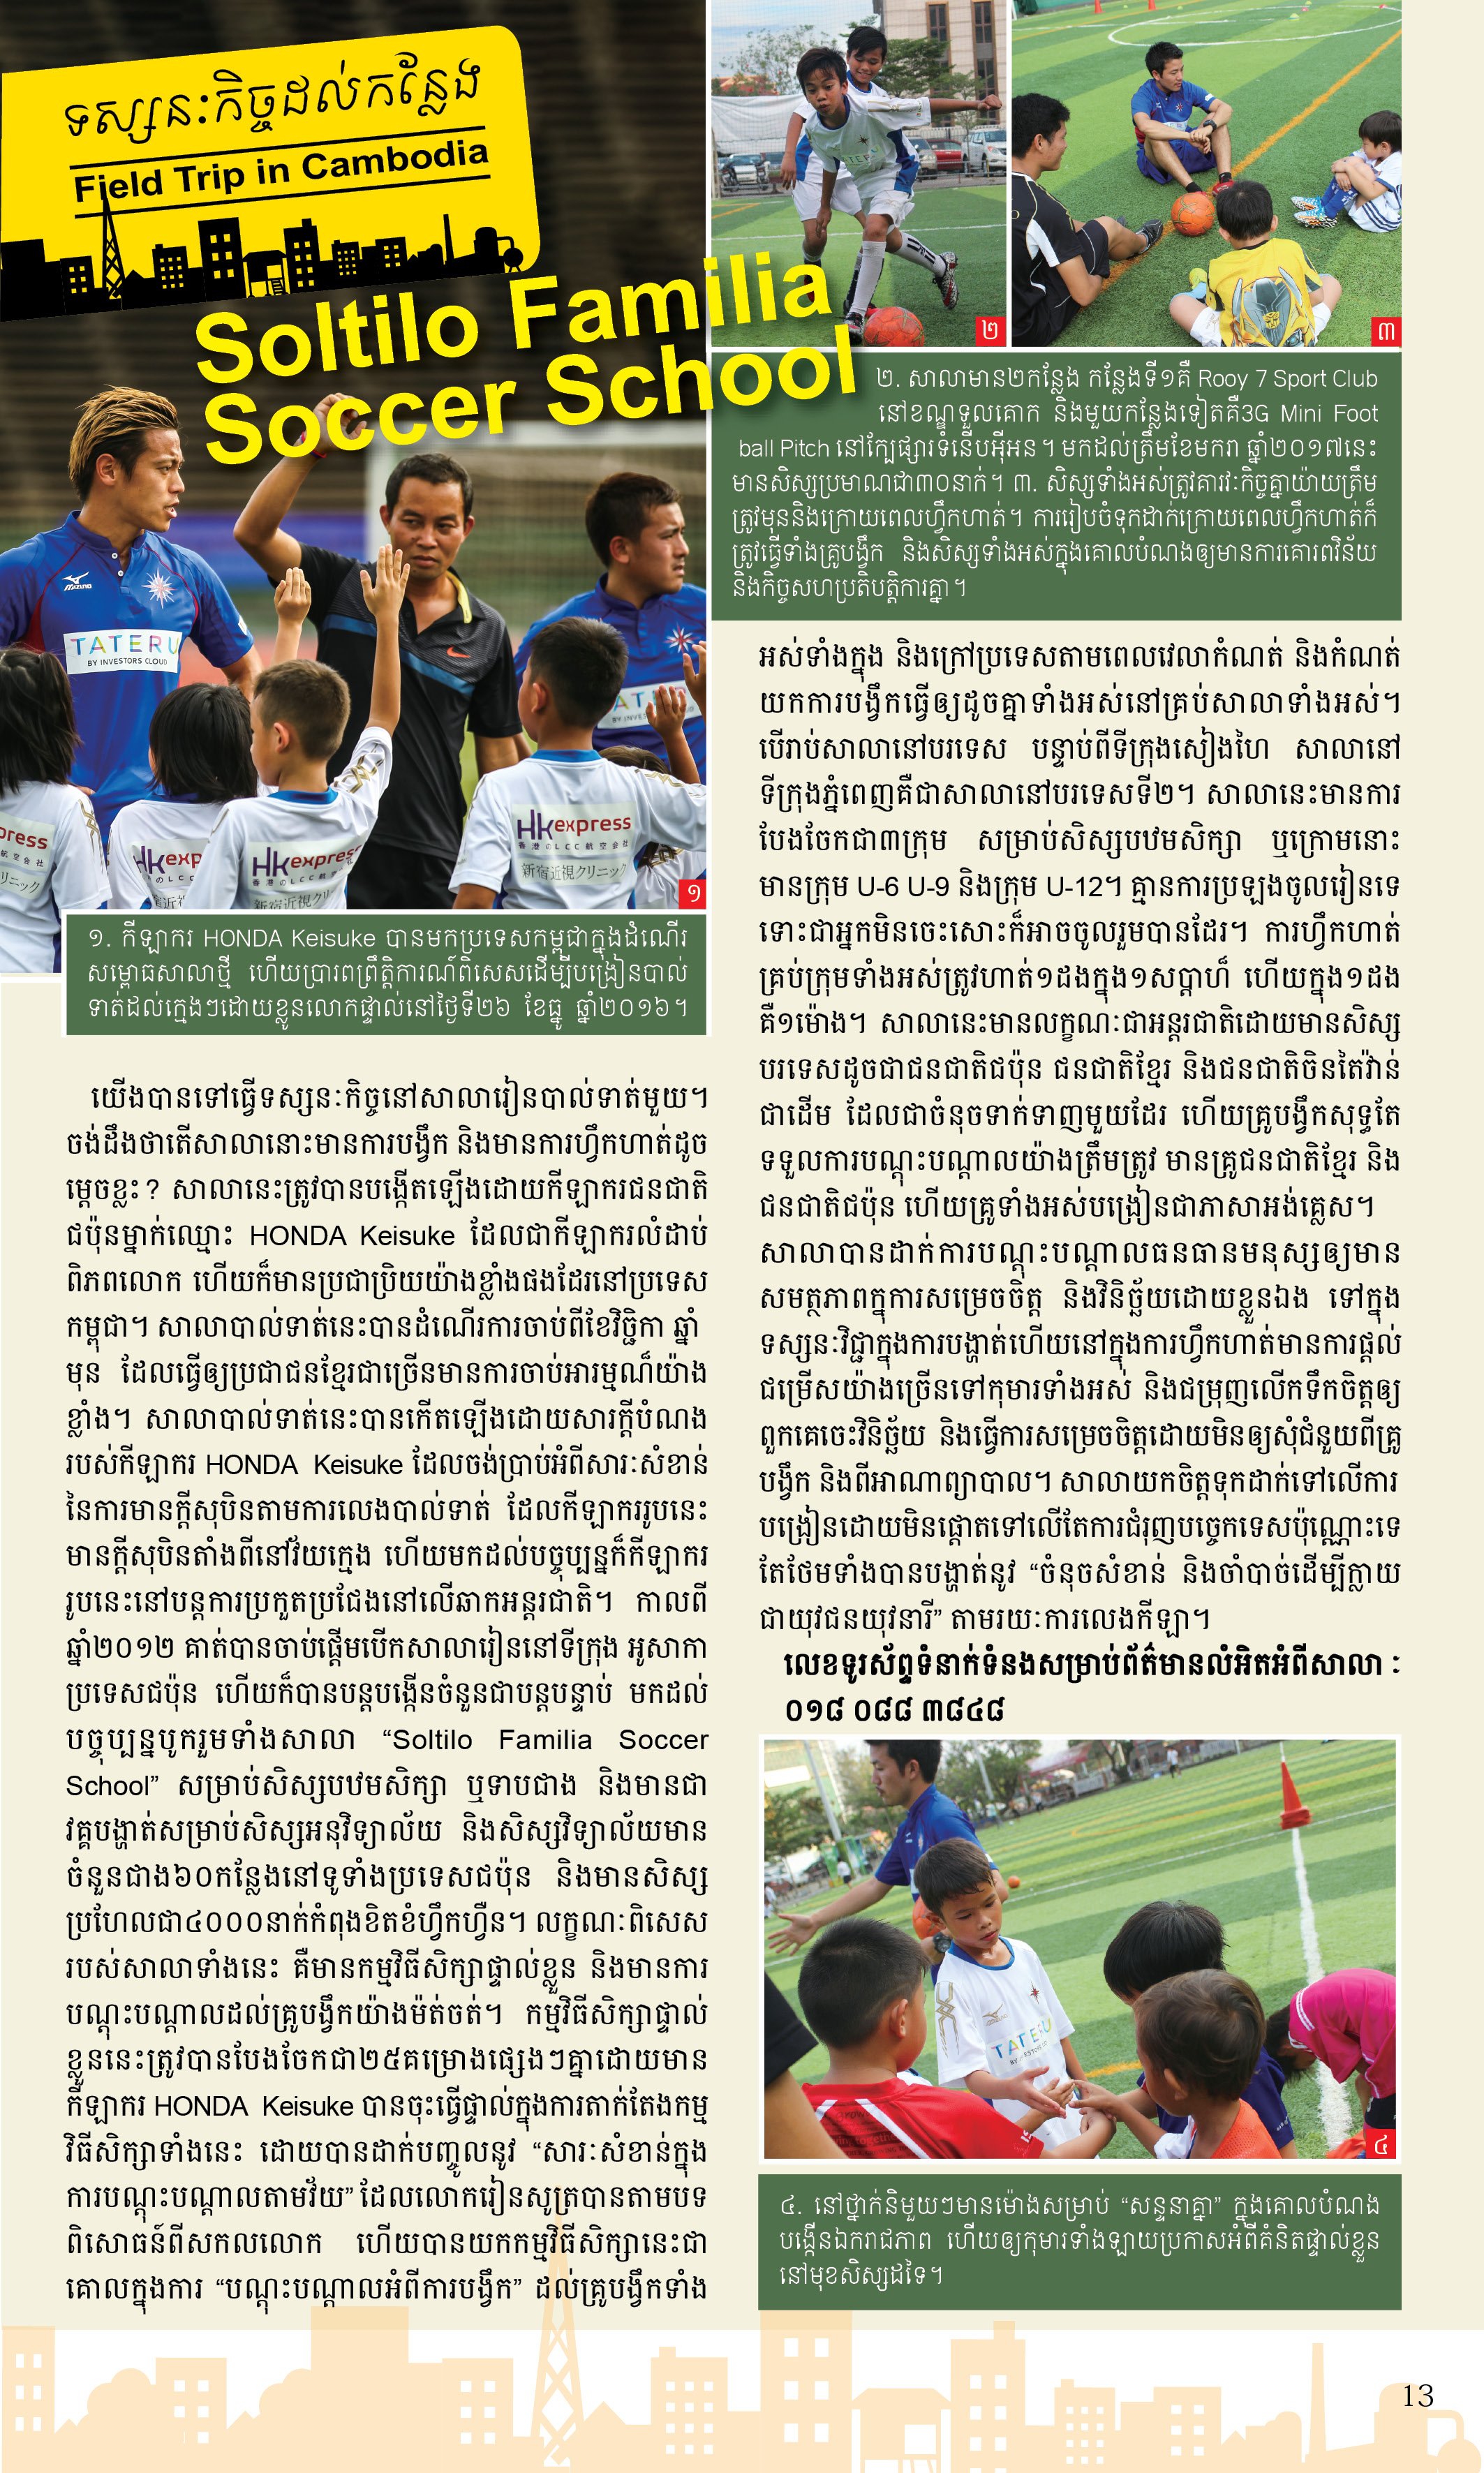 Nyonyum カンボジア情報マガジン 先日 日本語 英語版に続きクメール語版でも紹介したソルティーロファミリア サッカースクール 雑誌をスクールの生徒さんに届けてきました 息子が載っている と親御さん大興奮 カンボジア校では将来 サッカー